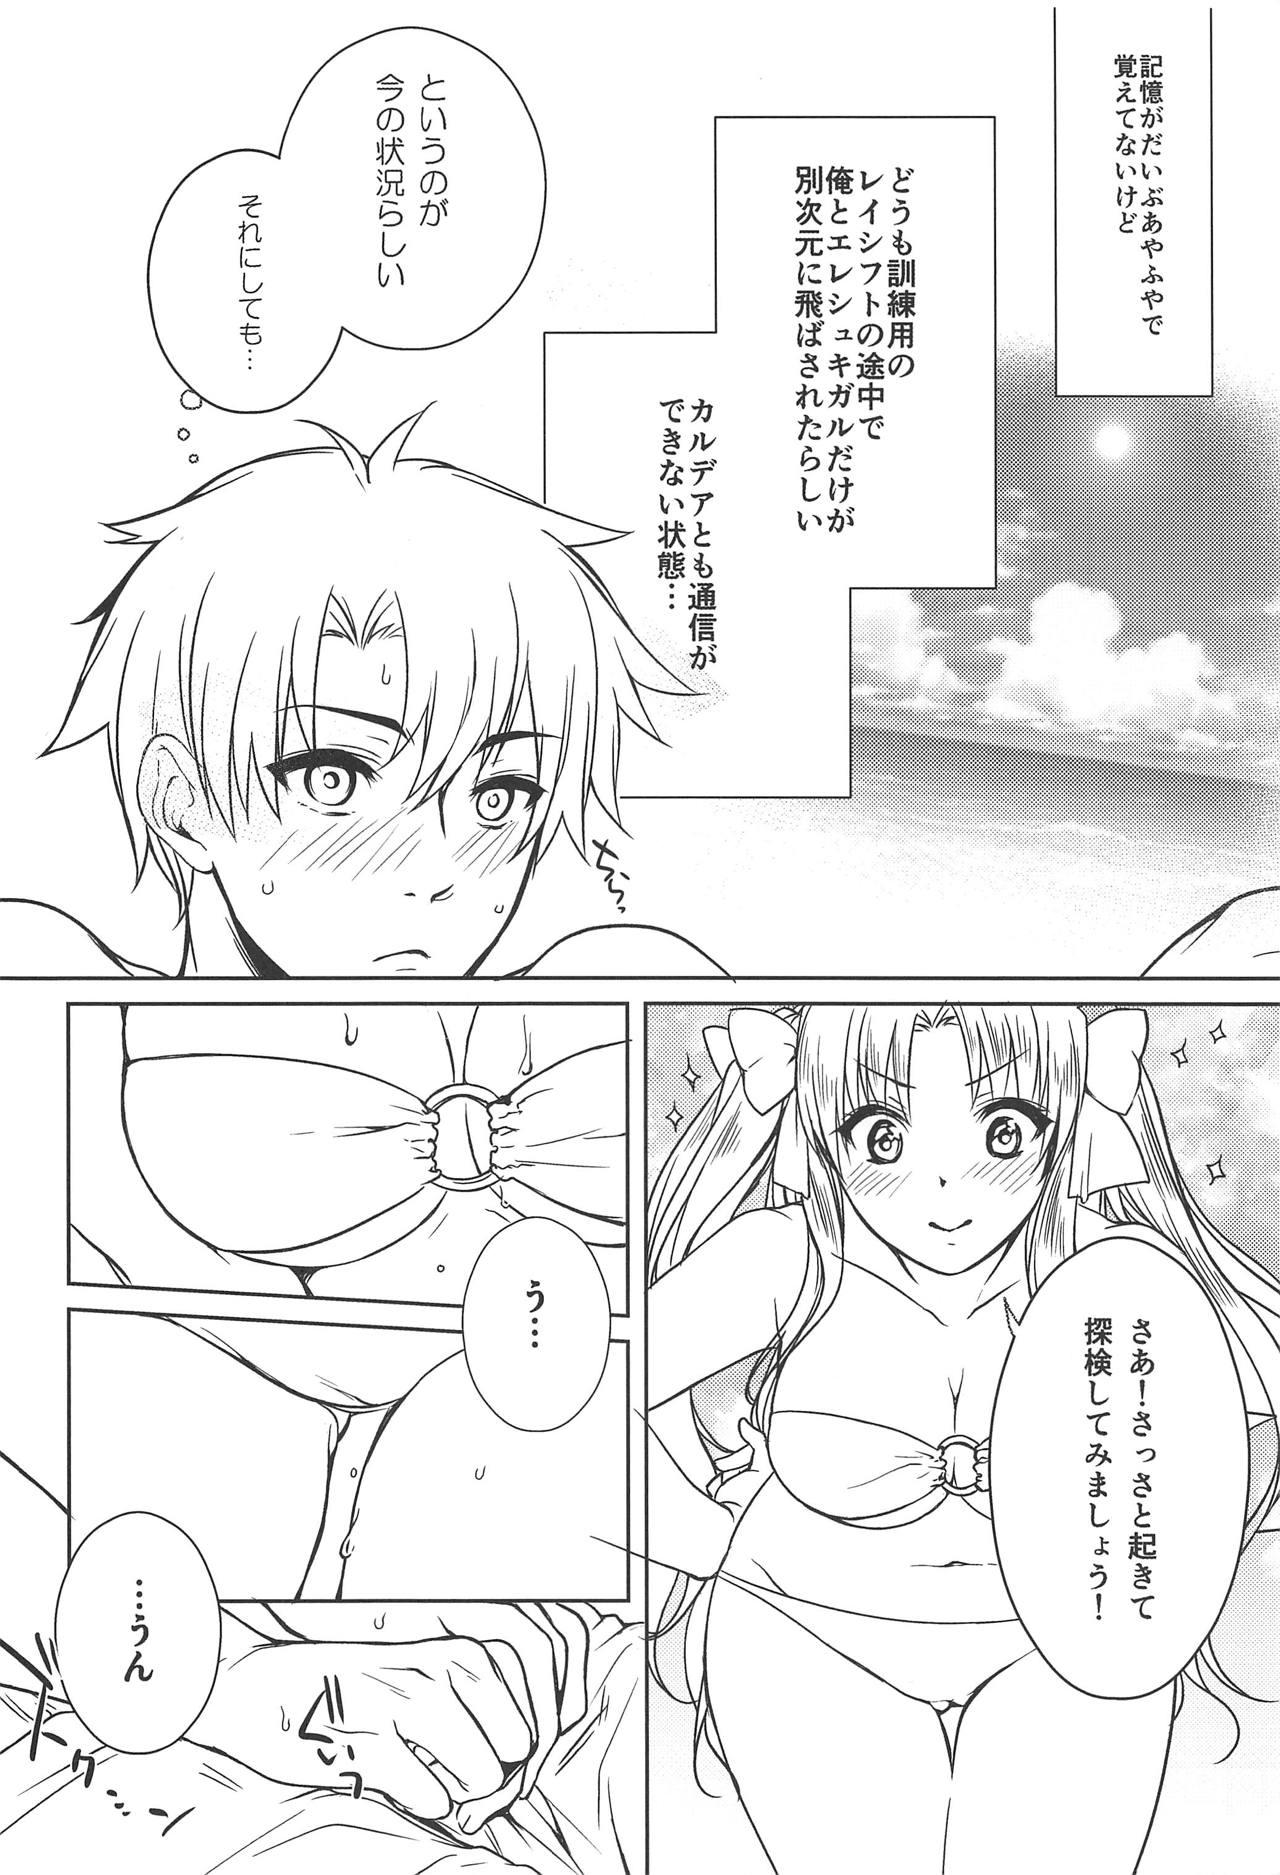 Nalgas Natsu to Megami to Yumemonogatari - Fate grand order Dominant - Page 6